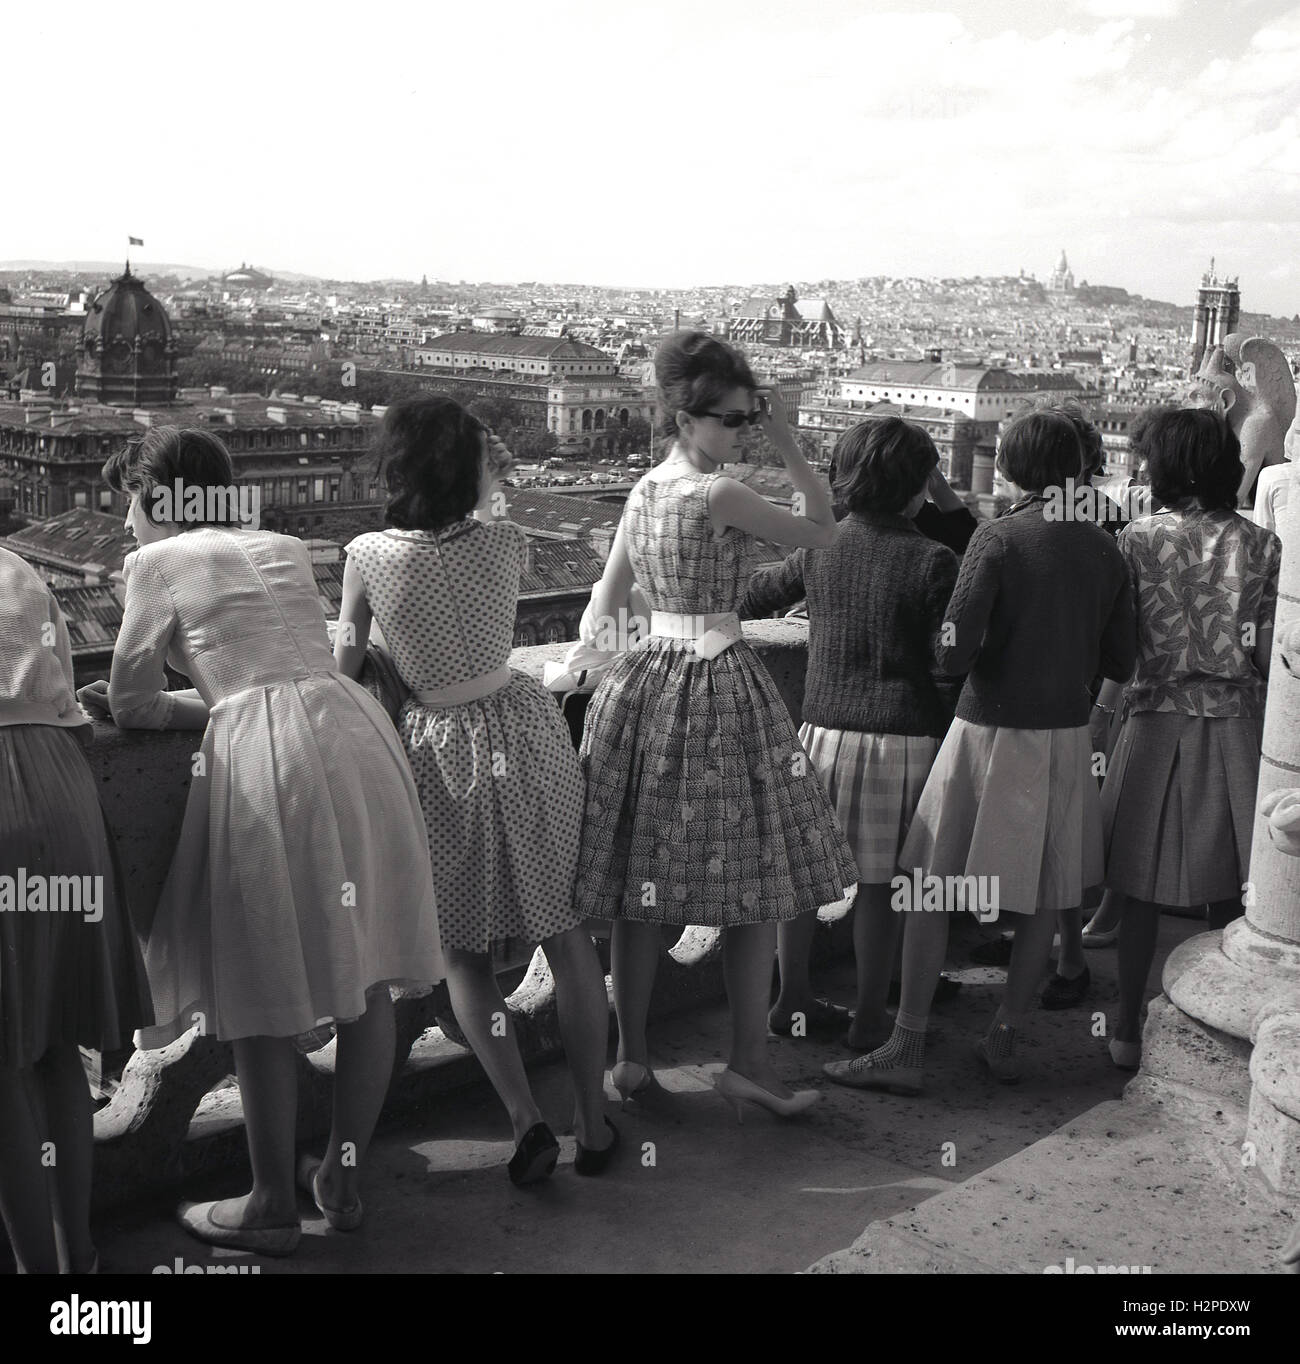 Années 1950, historique, groupe de jeunes femmes en robes d'oeil sur les toits de Paris du haut de la Cathédrale Notre Dame, Paris, France. Banque D'Images